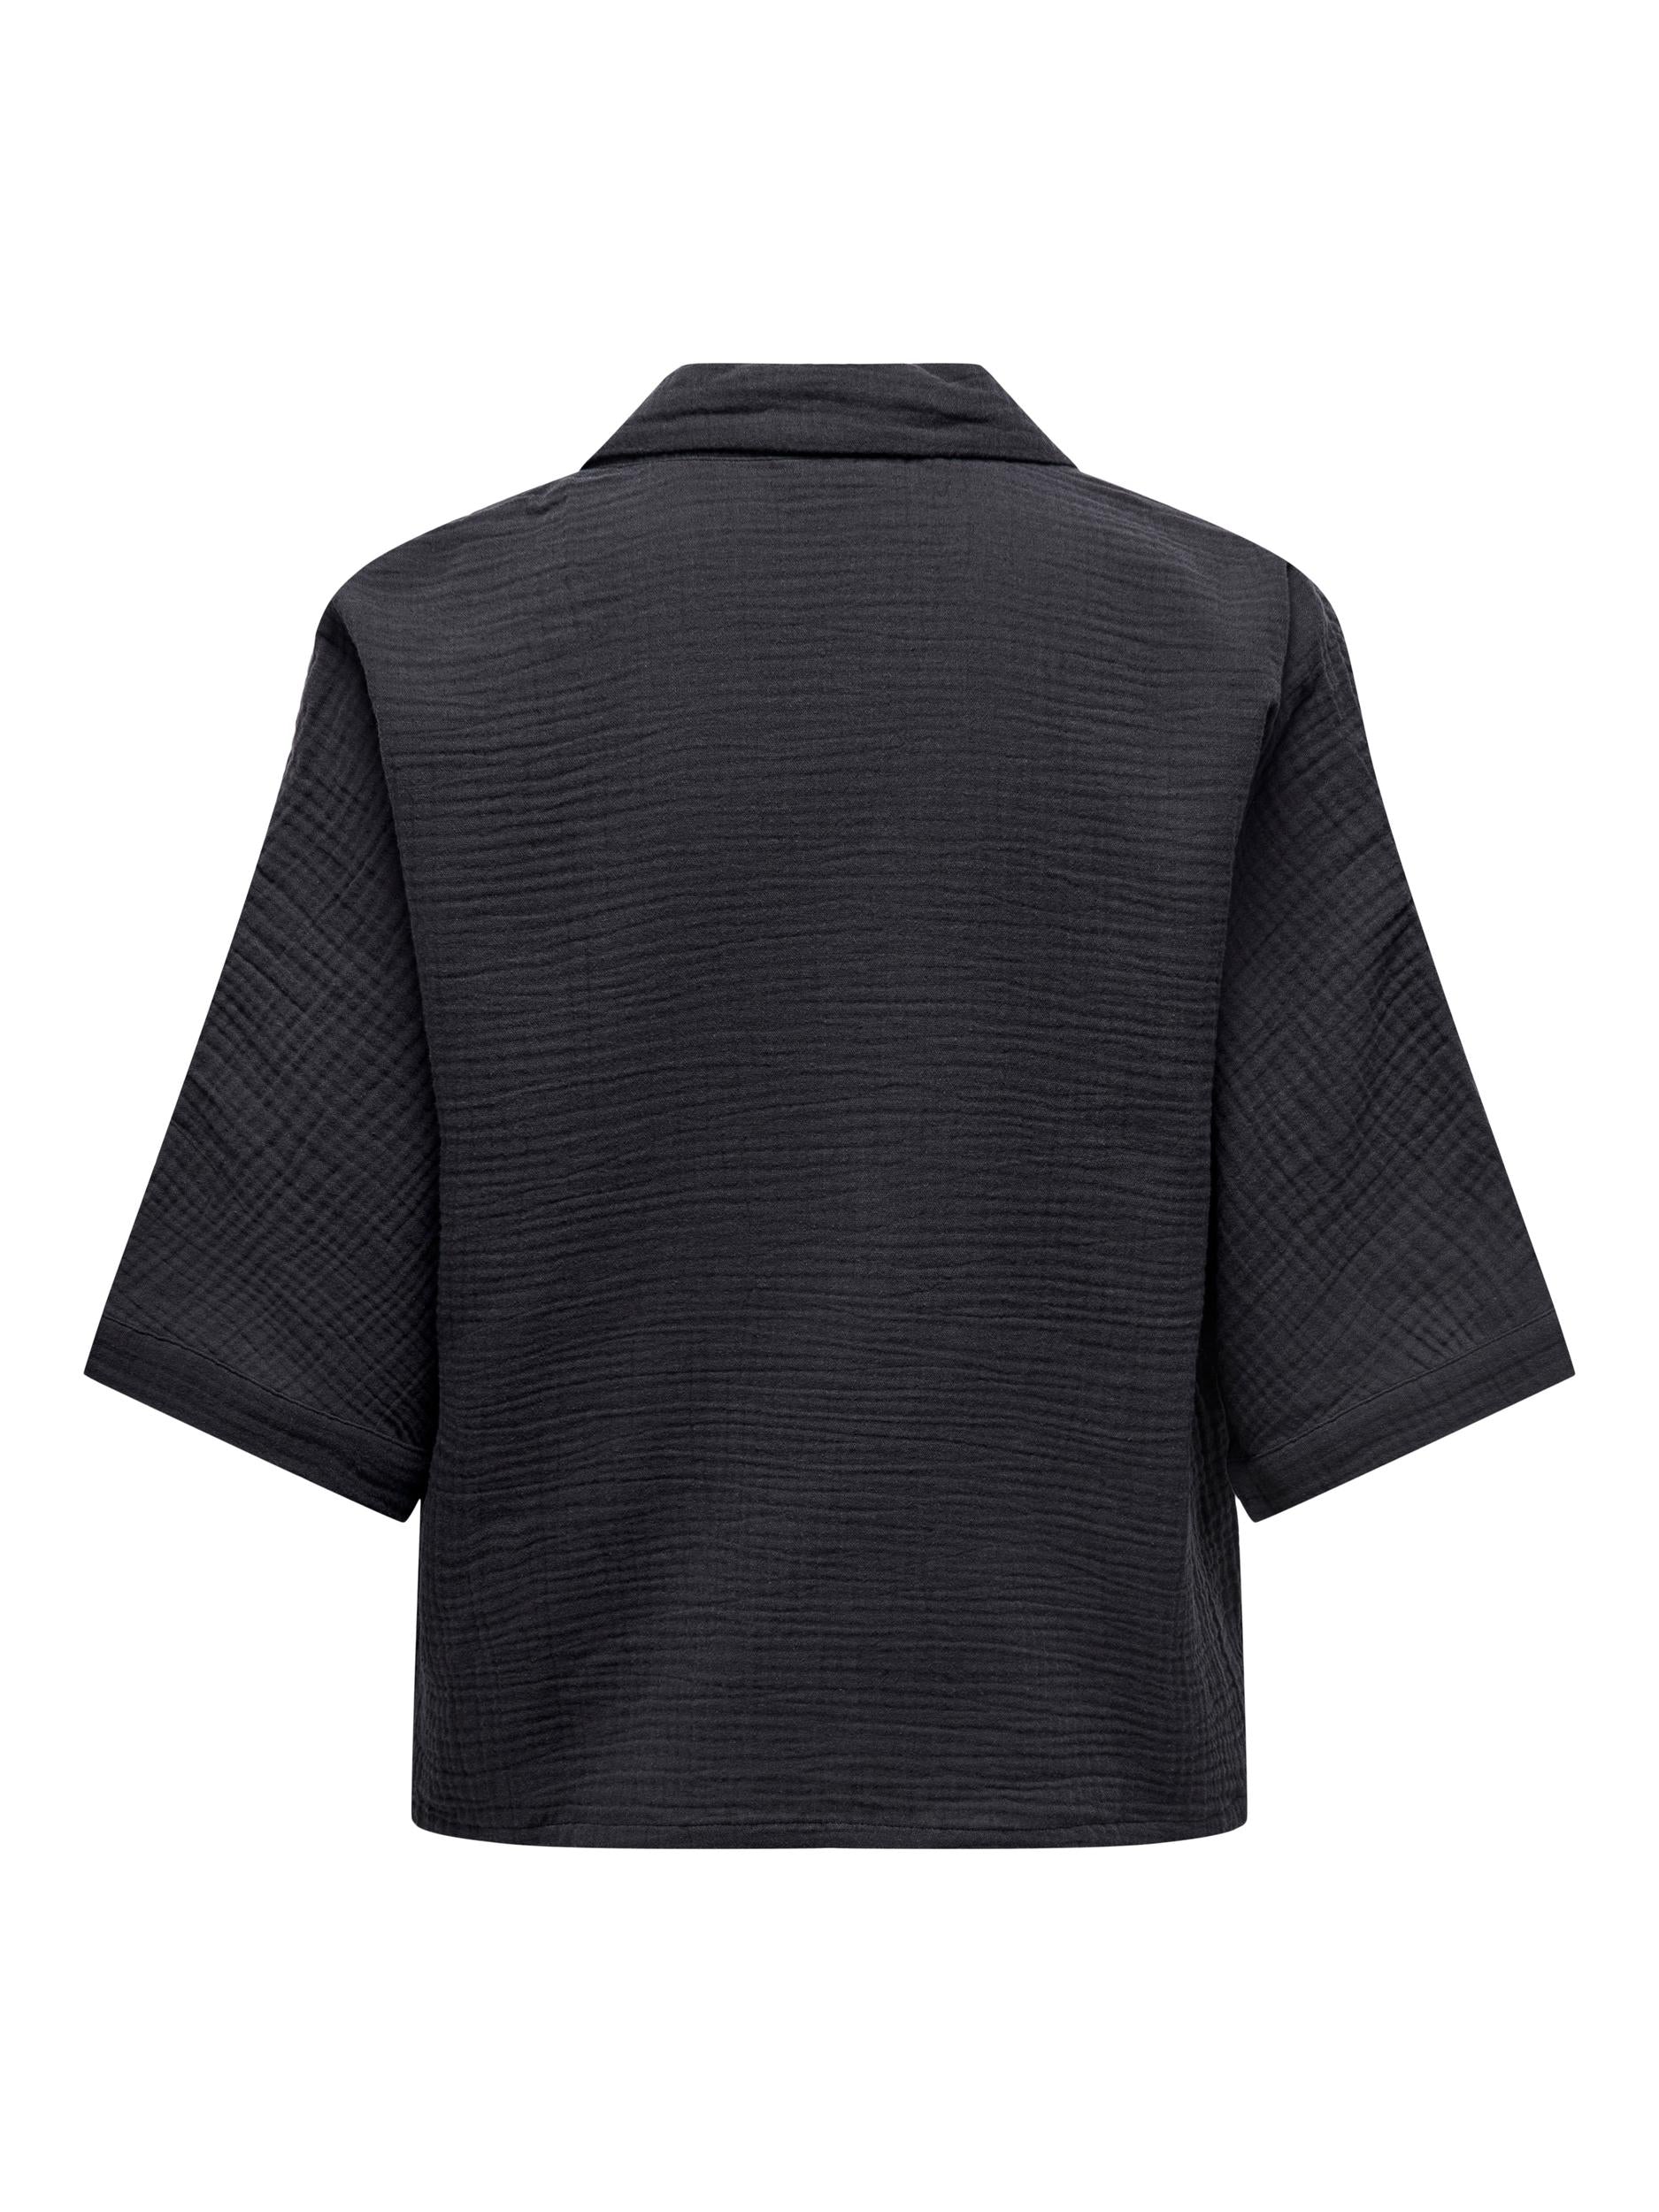 TOPS - Only - Thyra Cotton Gauze Shirt - PLENTY